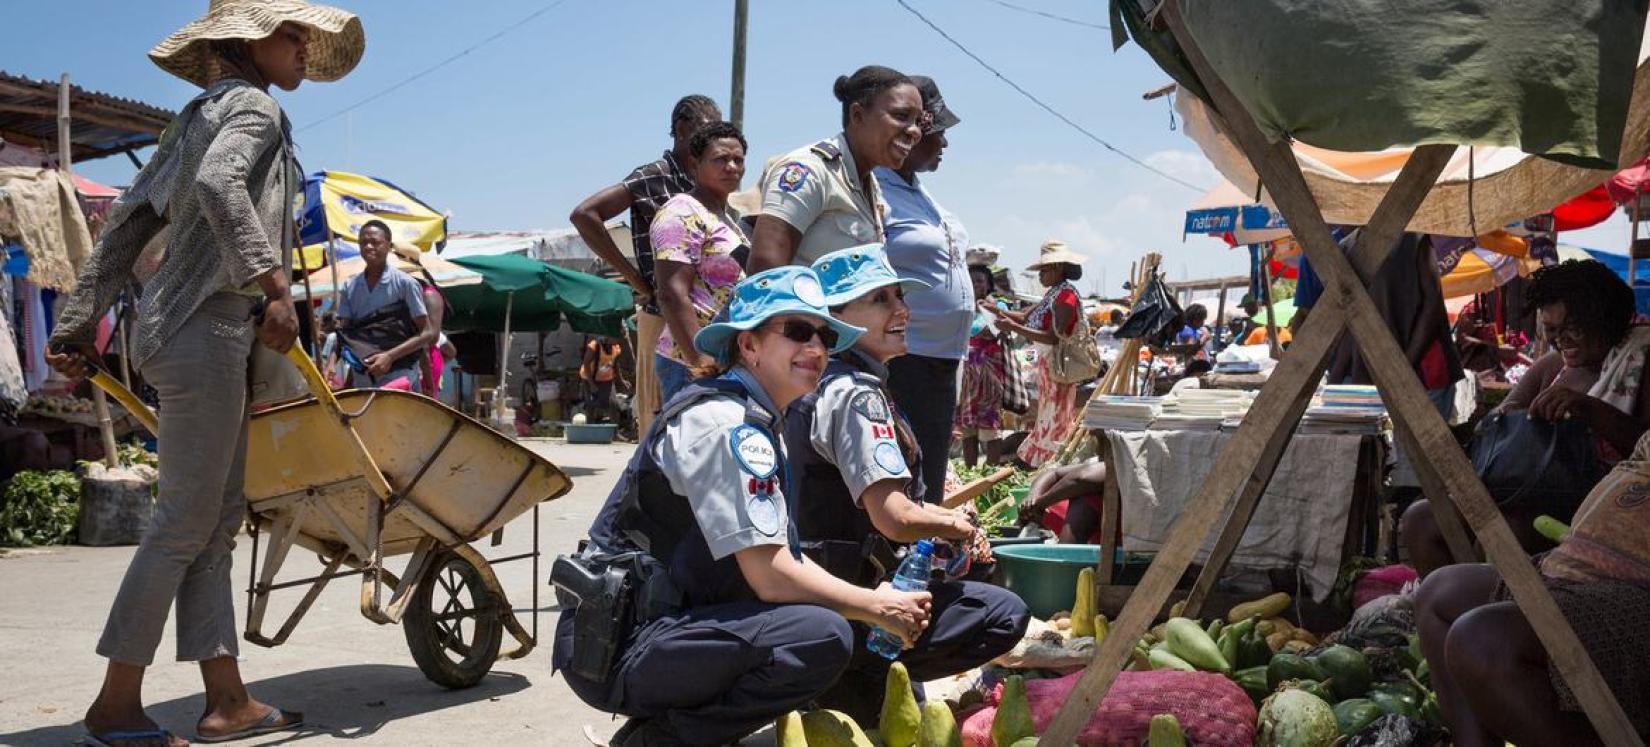 Duas policiais canadenses servindo no Haiti conversam com mulheres locais sobre os esforços da ONU para combater a exploração e o abuso sexual.